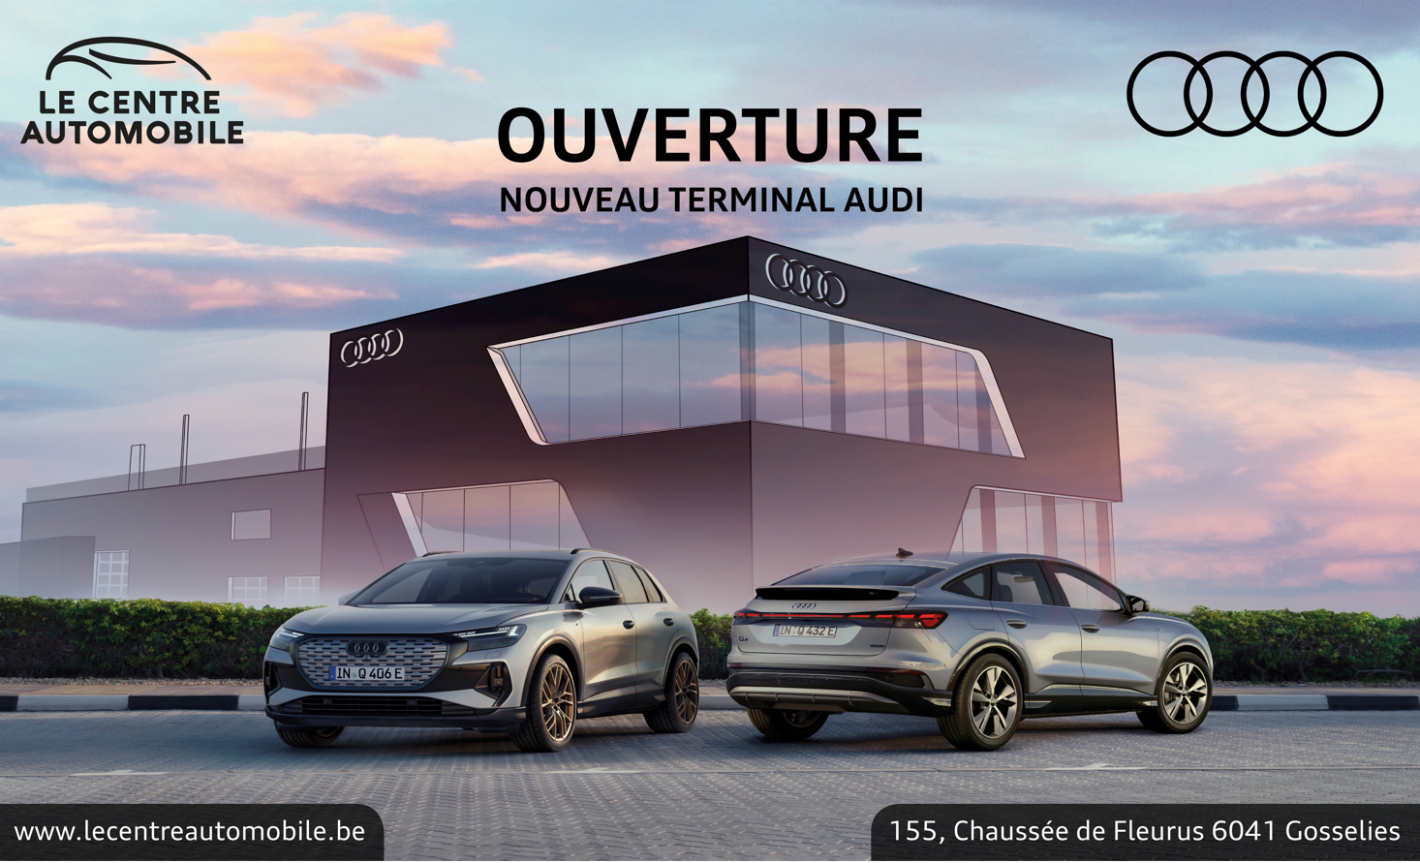 Ouverture nouveau terminal Audi